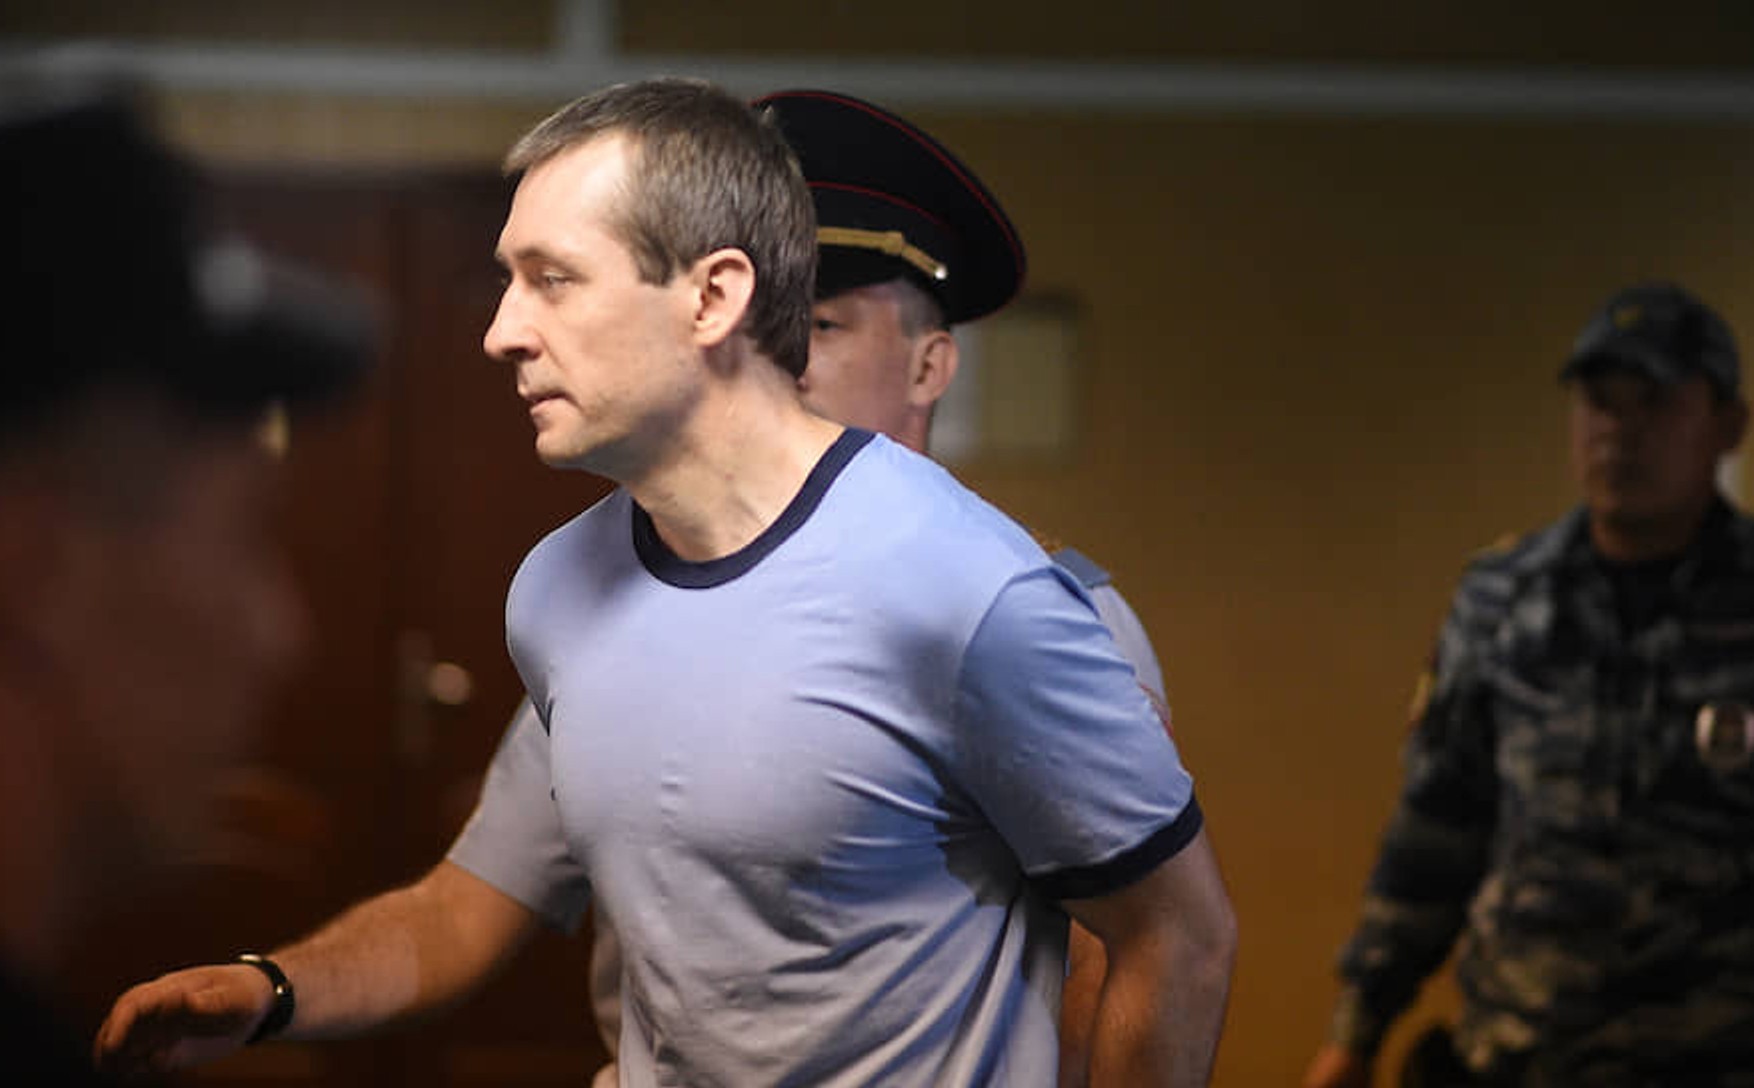 Суд приговорил экс-полковника МВД Захарченко к 16 годам колонии строгого режима по обвинению в получении взяток на 1,4 млрд рублей 